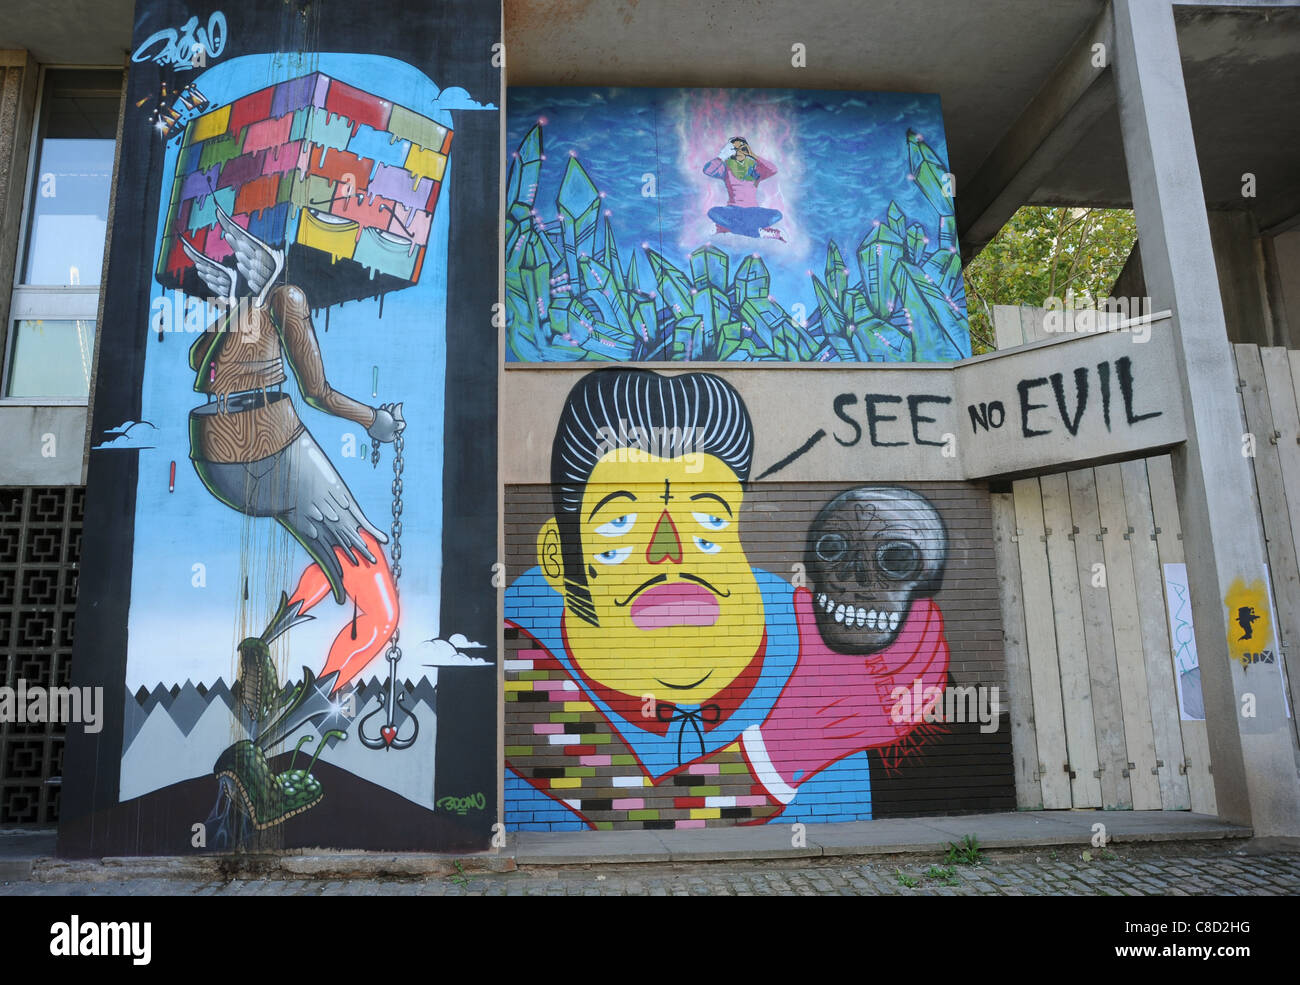 Bunte Graffiti-Kunst an der Wand eines heruntergekommenen Apartment-Blocks. Eine Erklärung zur Jugendkultur. Querformat. Stockfoto